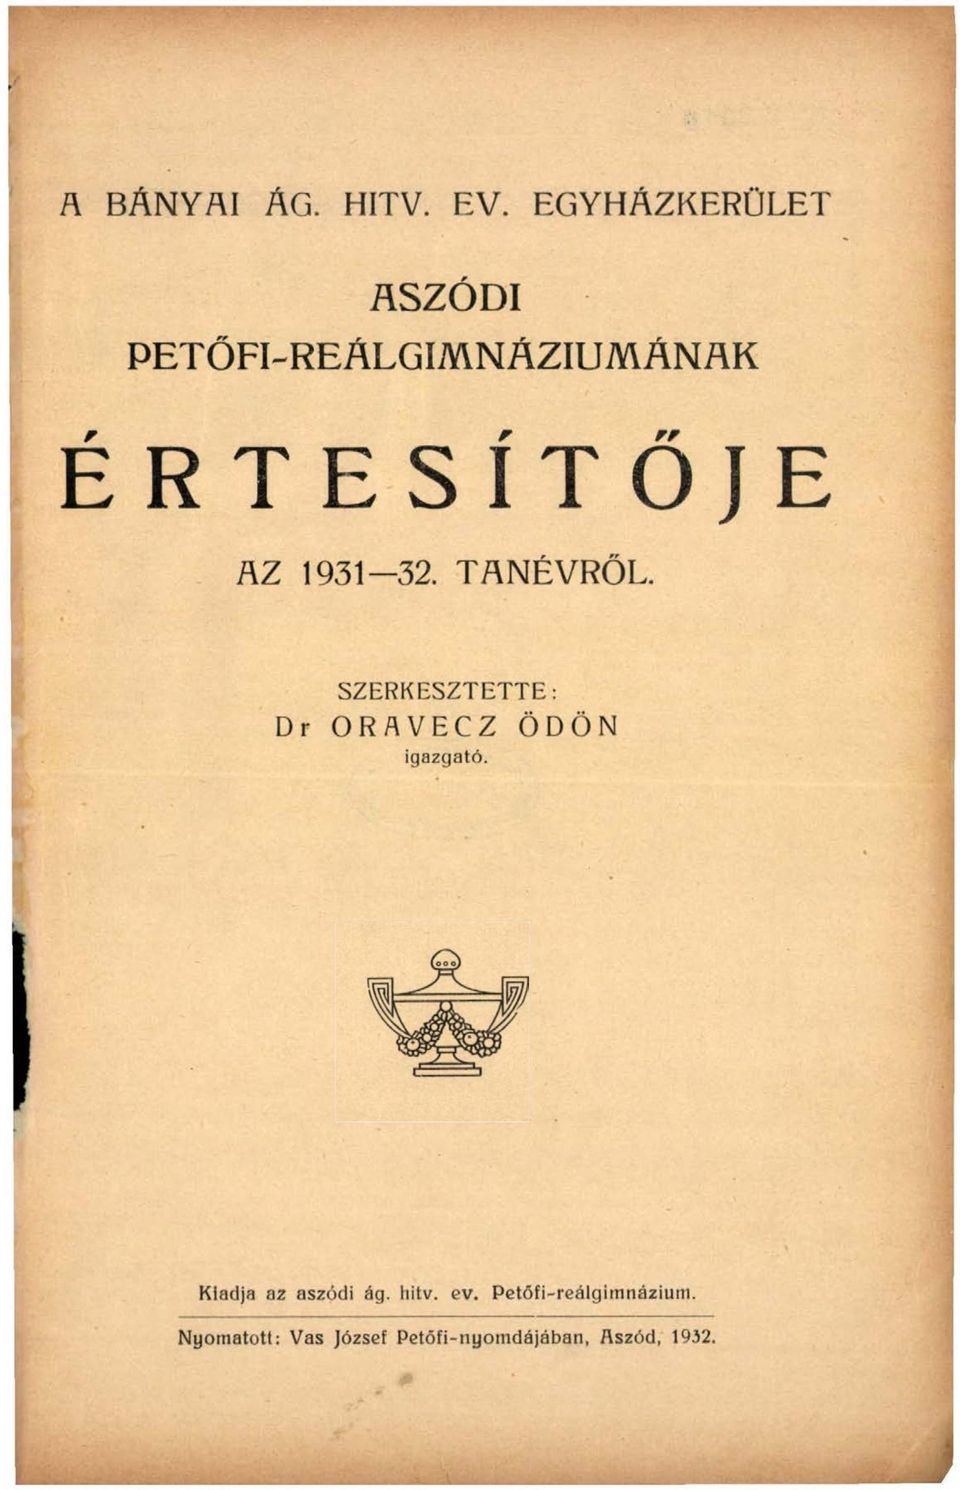 1931 32. TANÉVRŐL. SZERKESZTETTE: Dr ORAVECZ ÖDÖN igazgató.